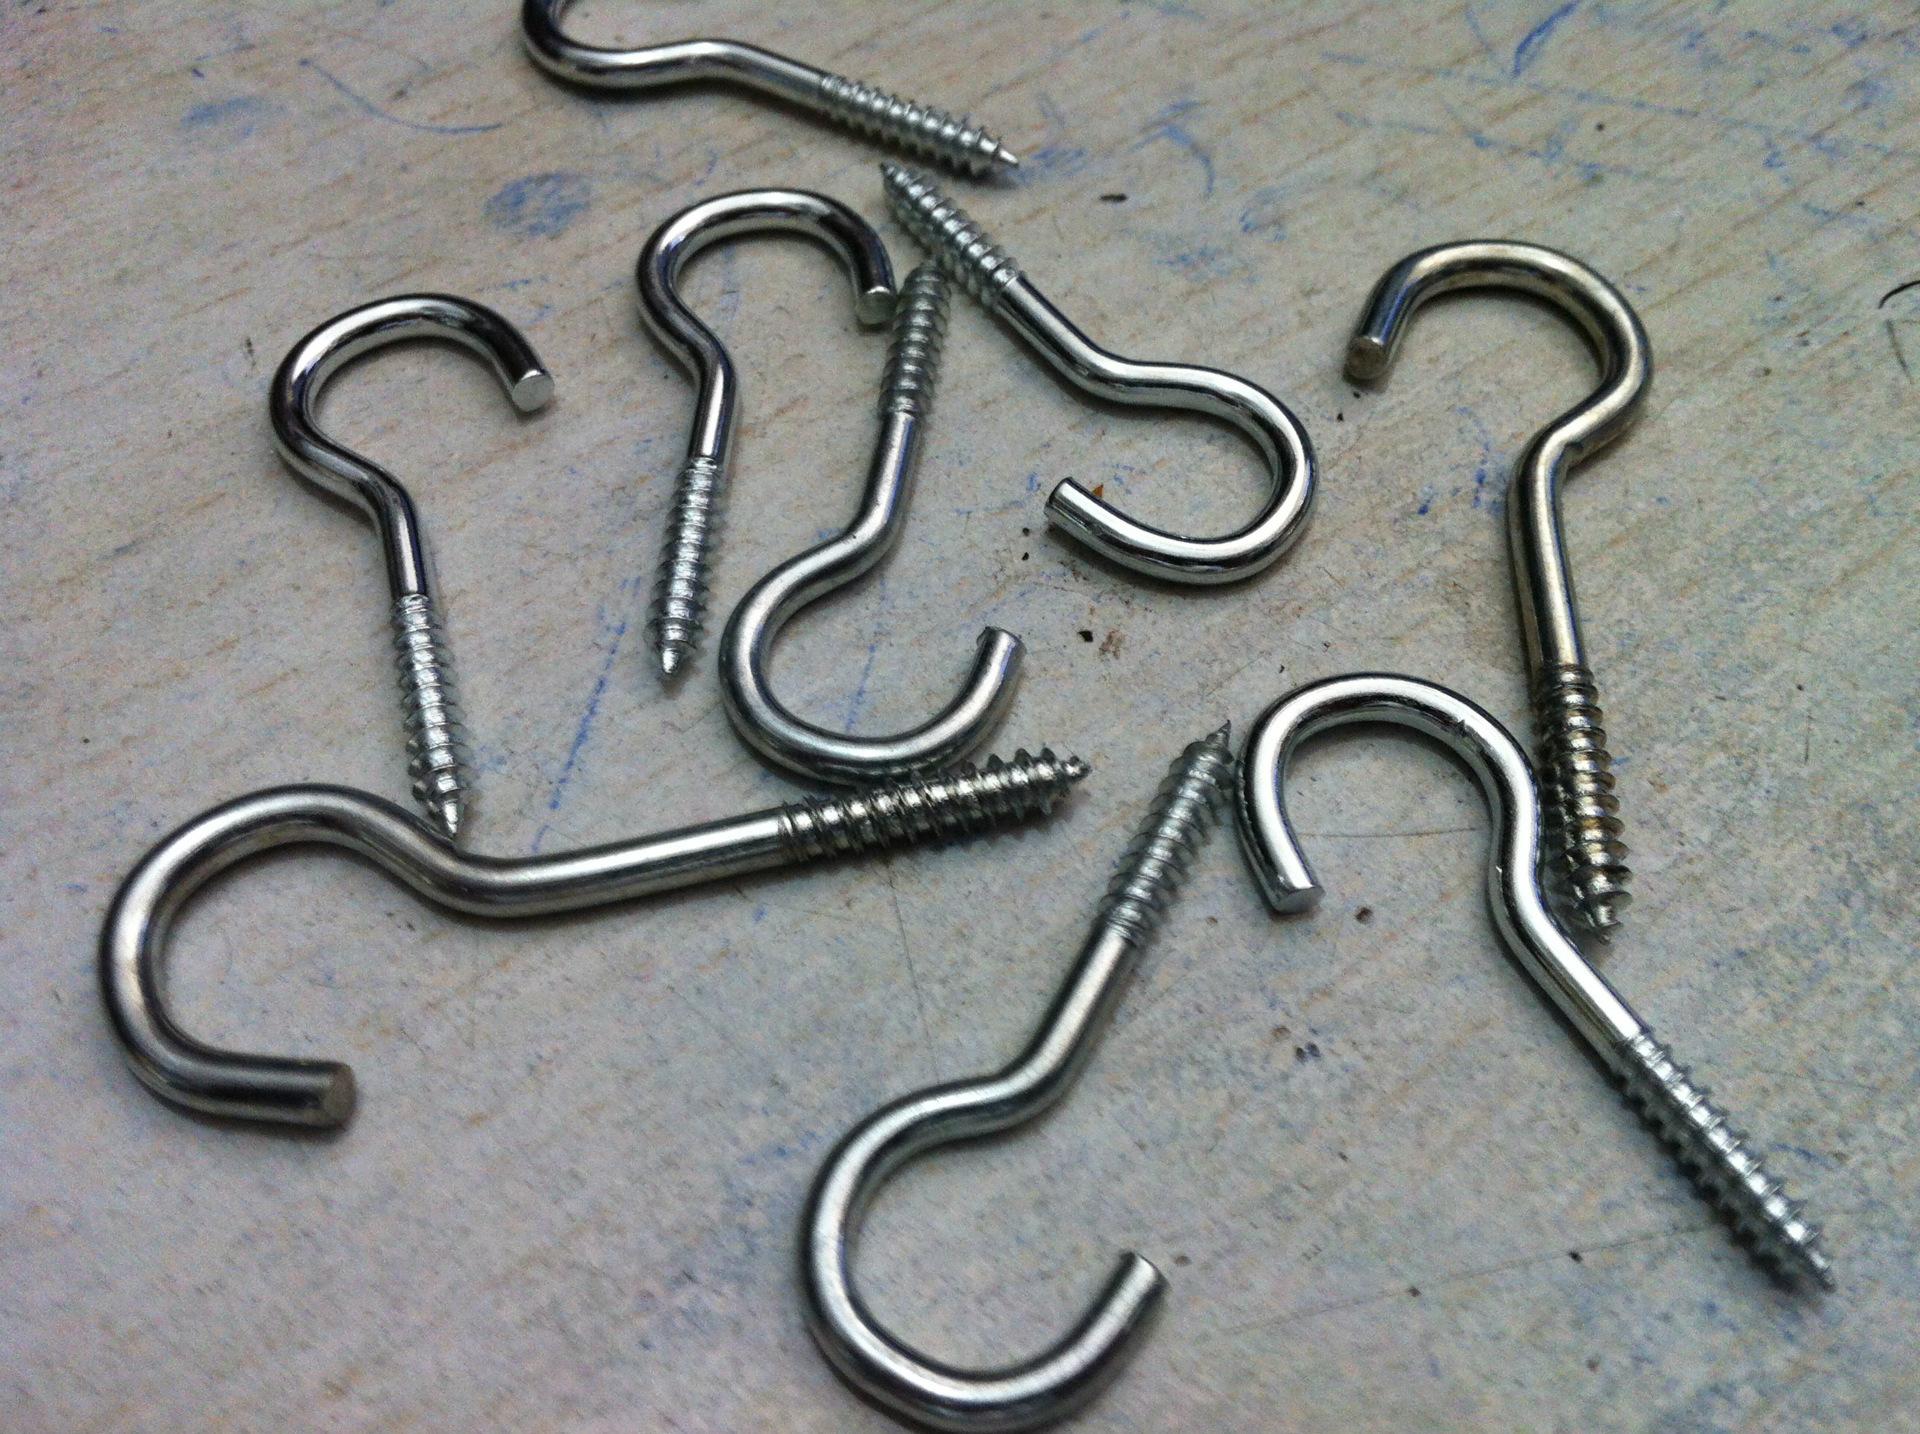 生产厂家按图或样品生产各种不锈钢或铁镀锌吊钩